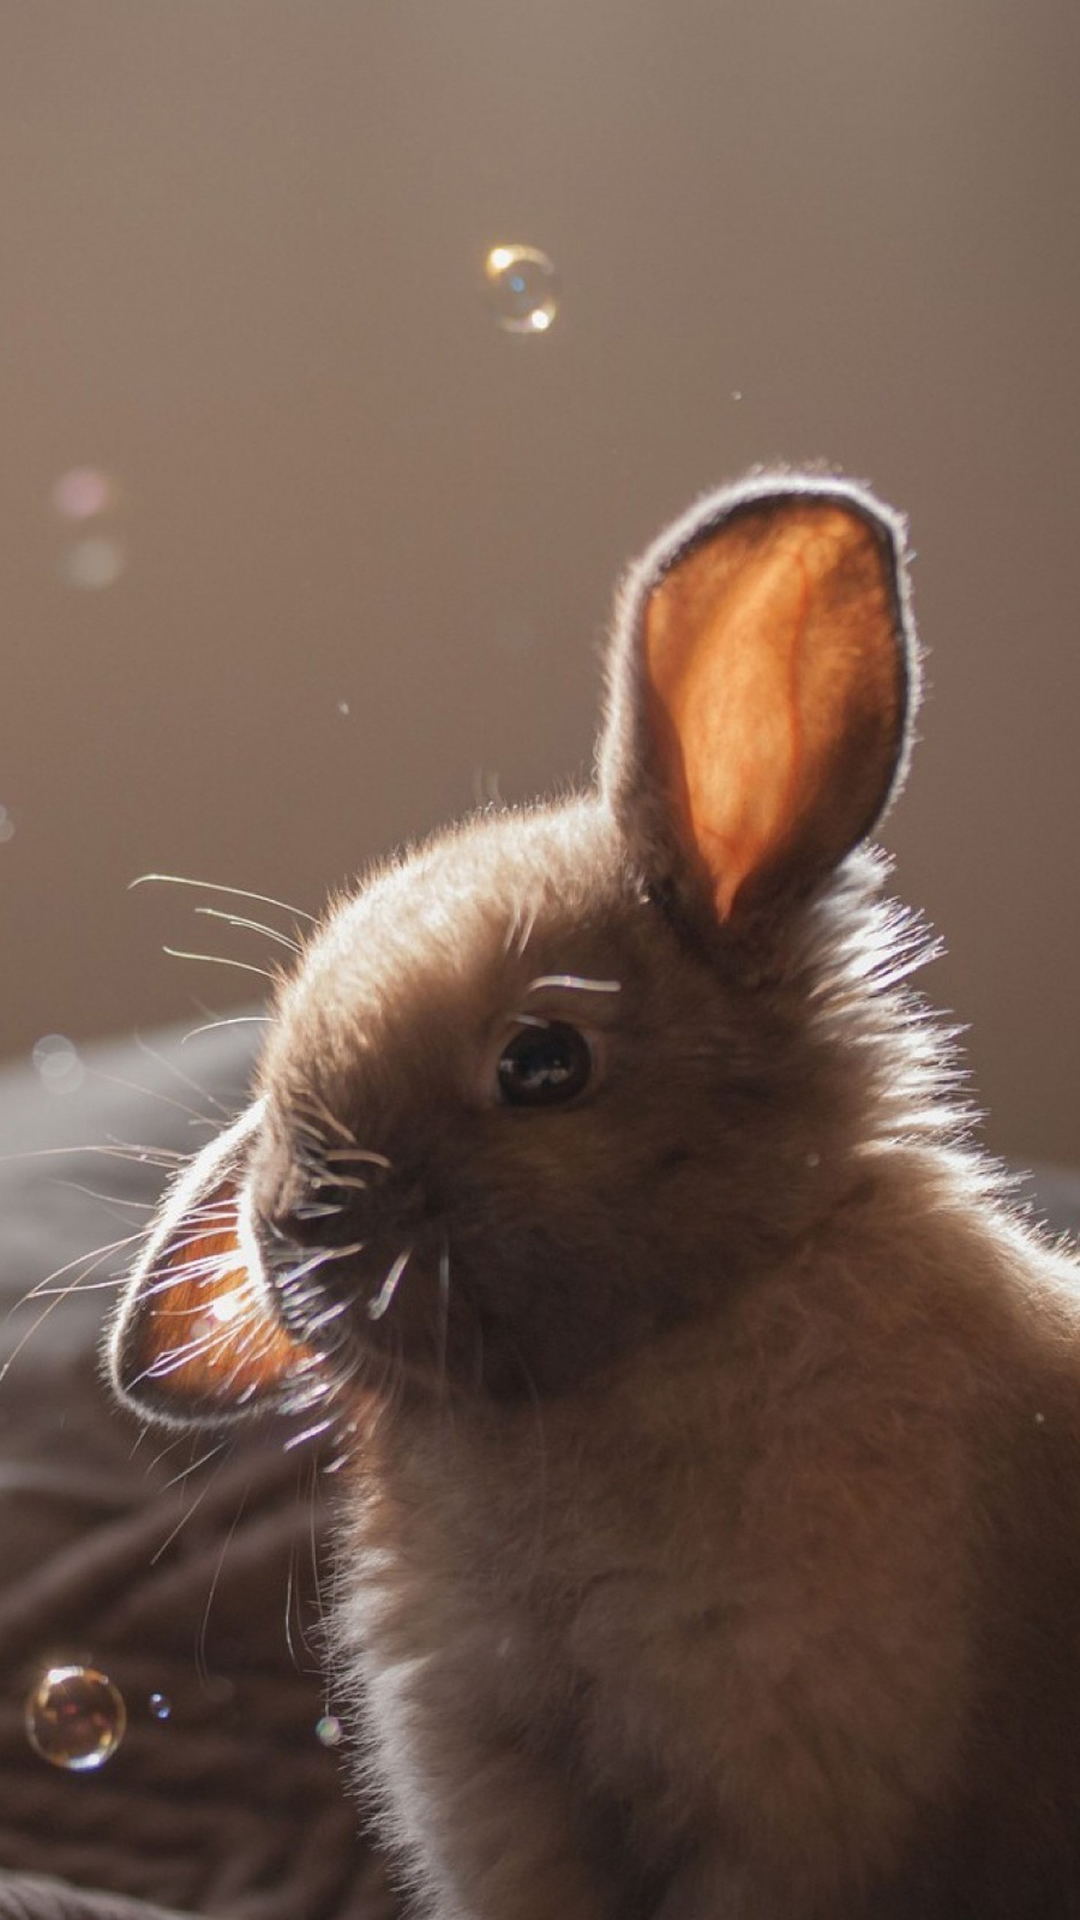 Cute-Bunny-Soap-Bubbles-iPhone-6-wallpaper.